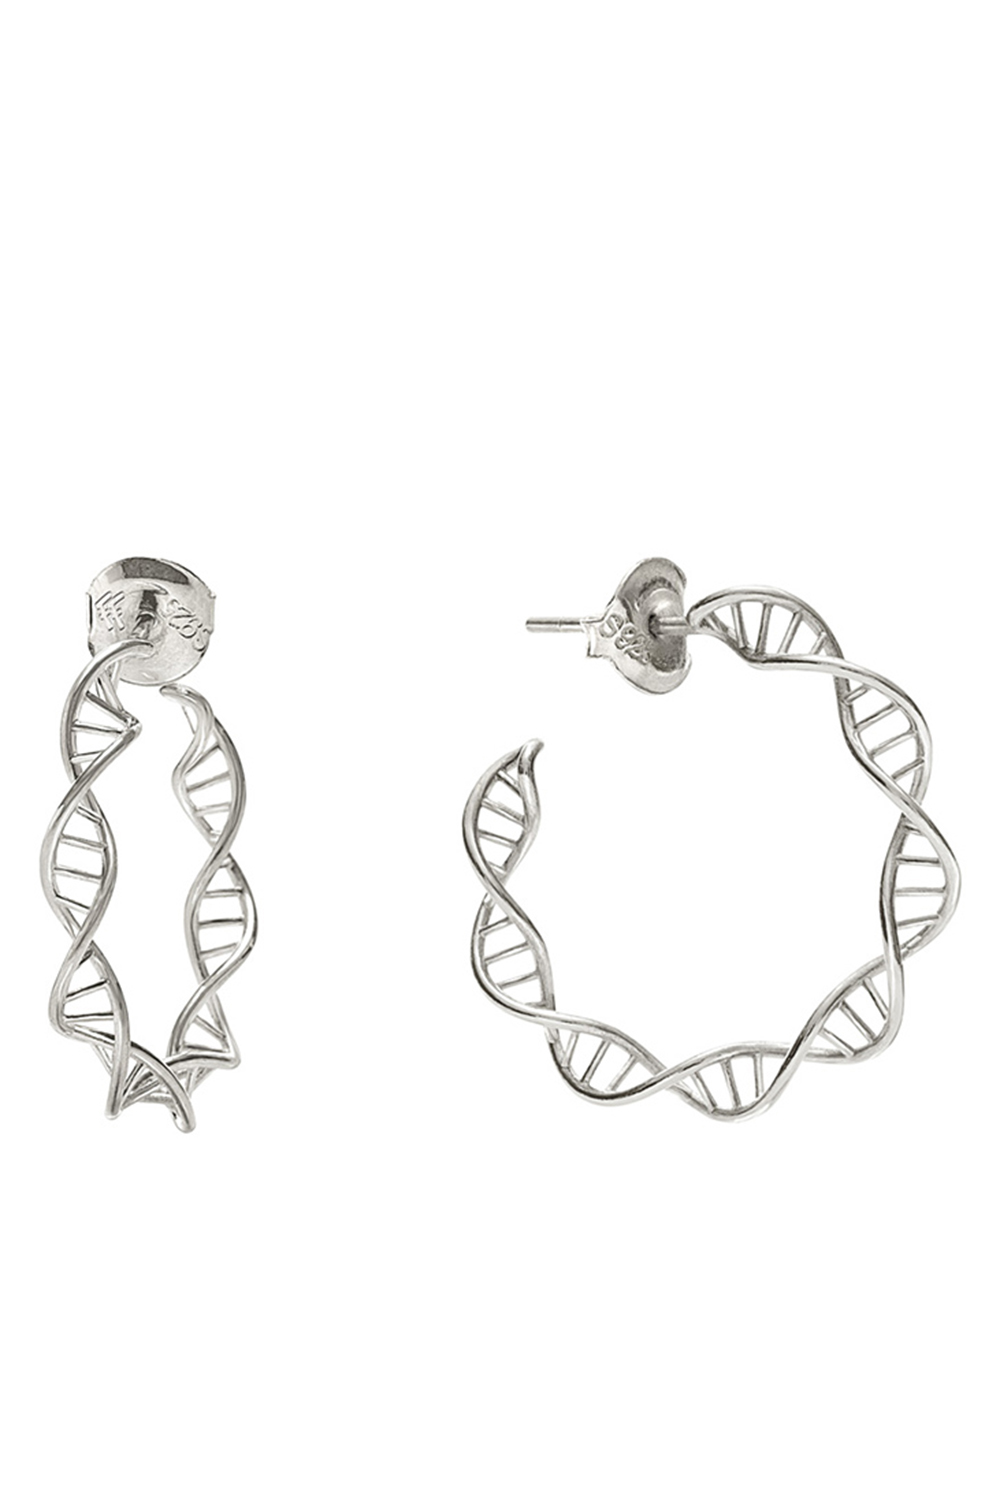 Γυναικεία/Αξεσουάρ/Κοσμήματα/Σκουλαρίκια FOLLI FOLLIE - Γυναικεία ασημένια σκουλαρίκια FOLLI FOLLIE STYLE DNA